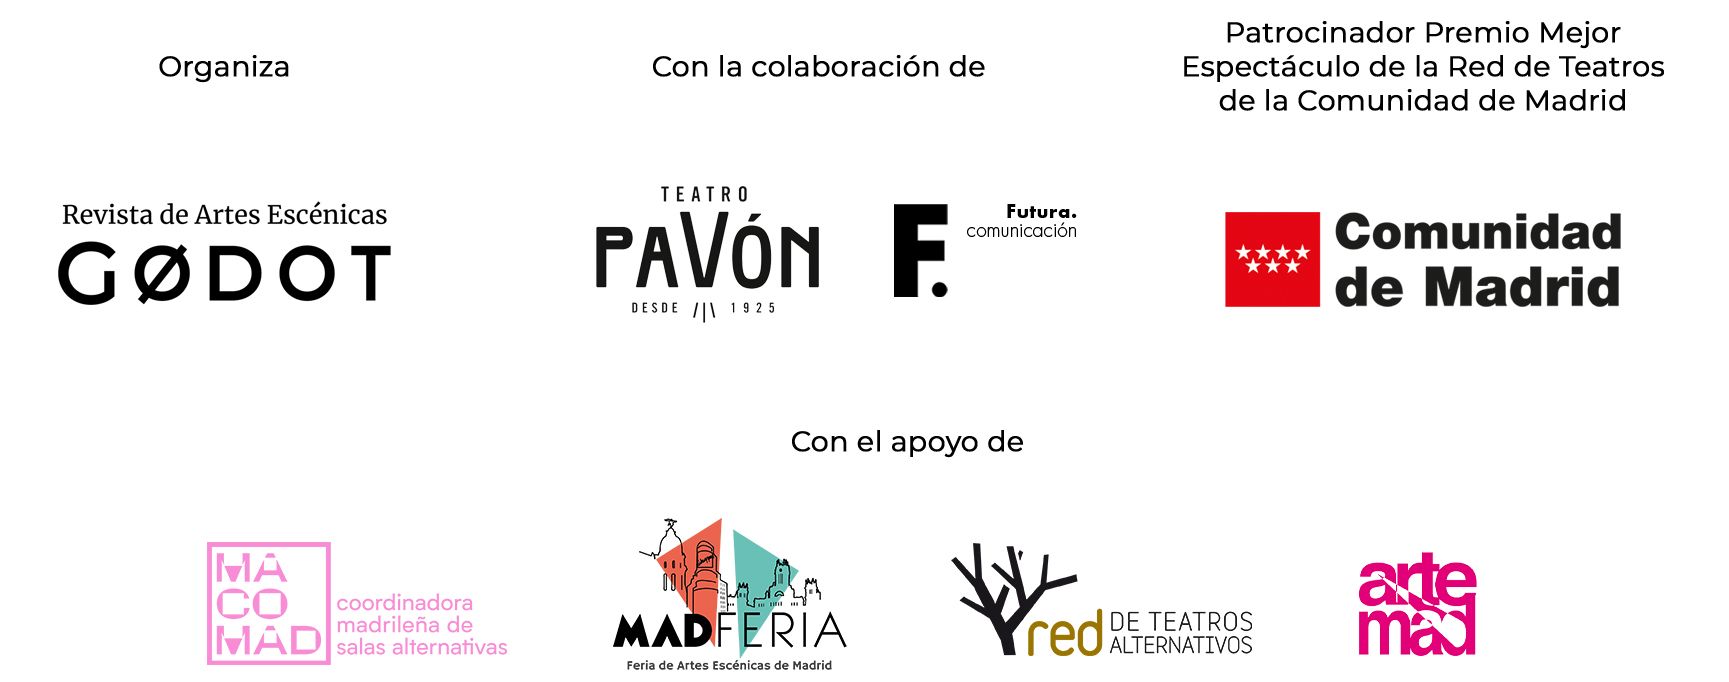 La Comunidad de Madrid y la Revista Godot premiarán la Red de Teatros en Madrid